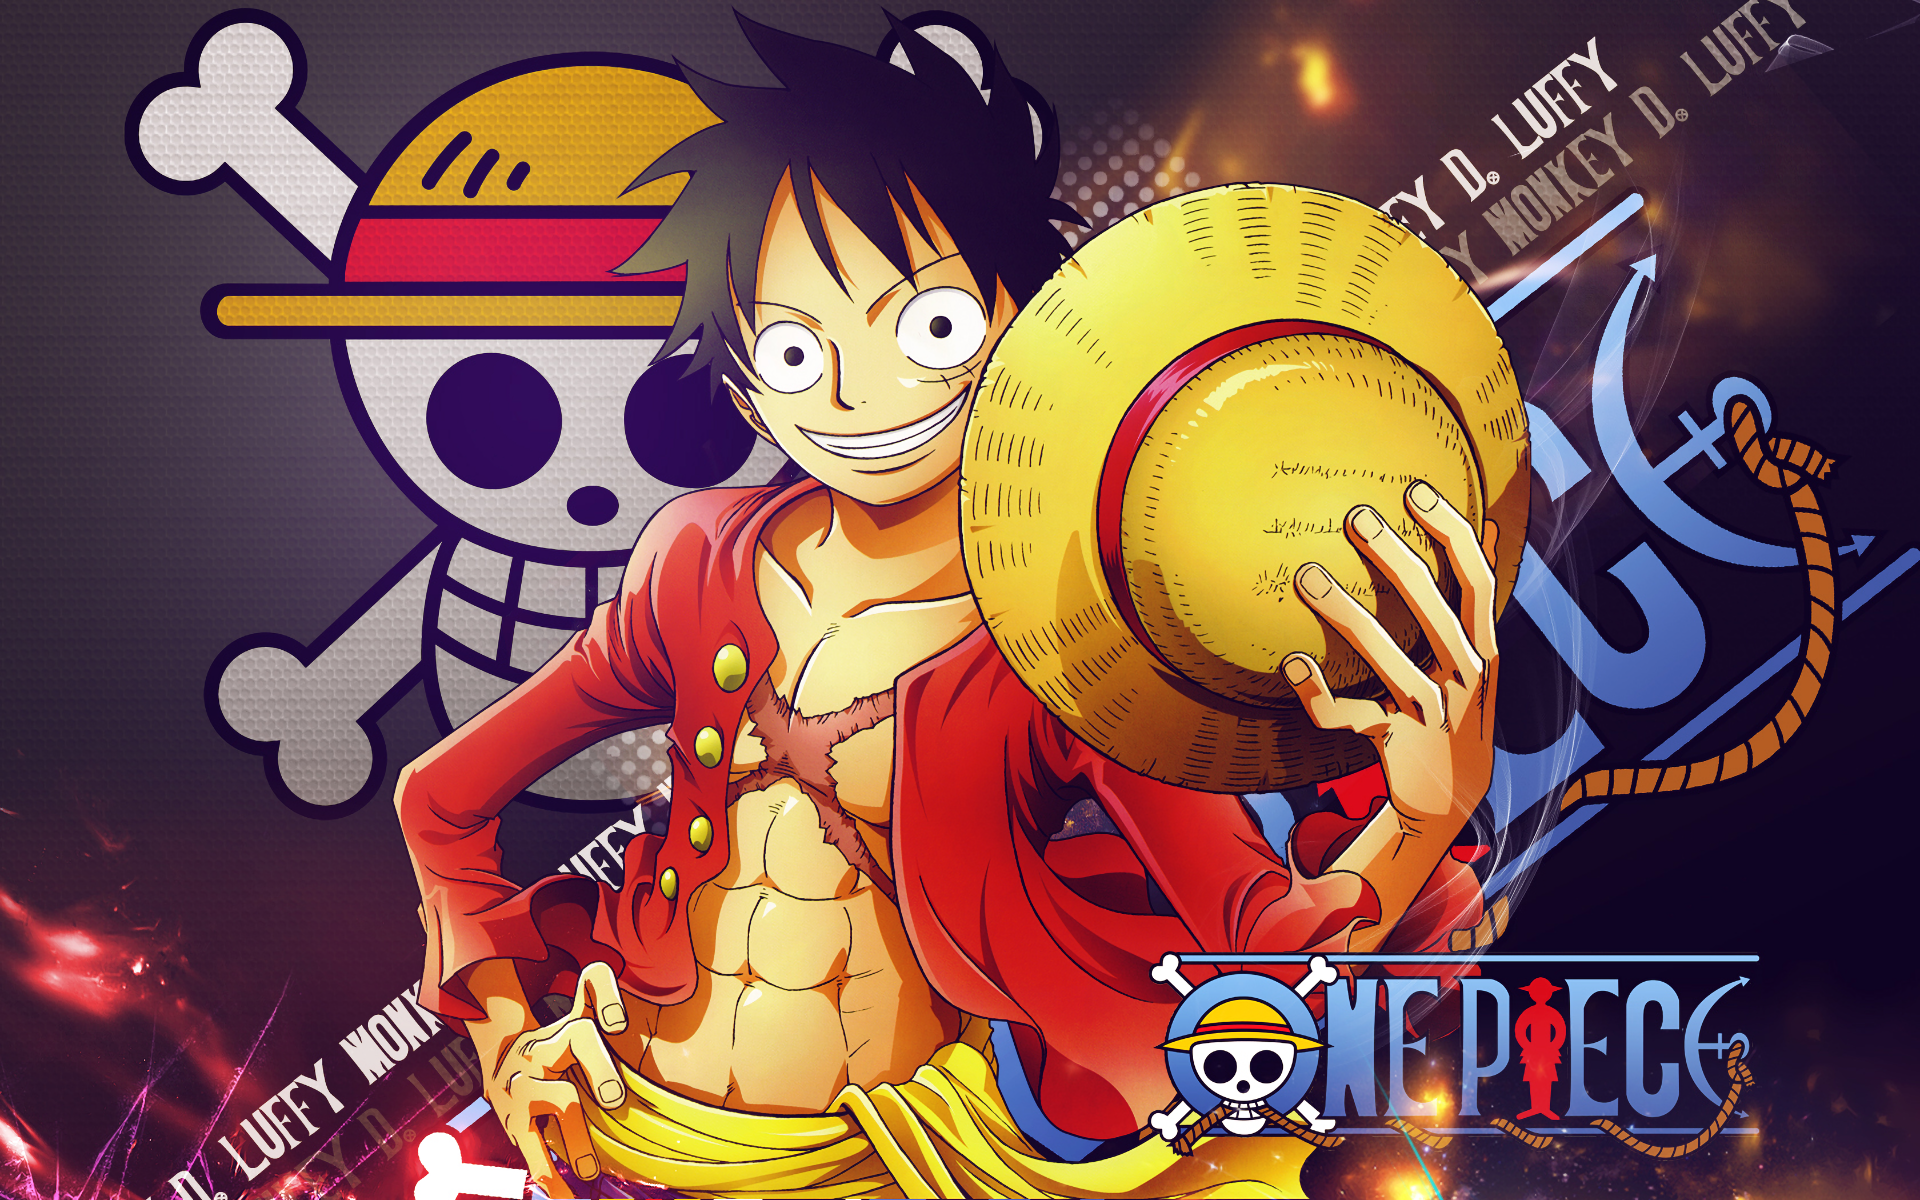 Hãy cùng thưởng thức bức hình nền One Piece chất lượng HD đầy màu sắc và sinh động để cảm nhận sự hấp dẫn của các nhân vật trong siêu phẩm này!